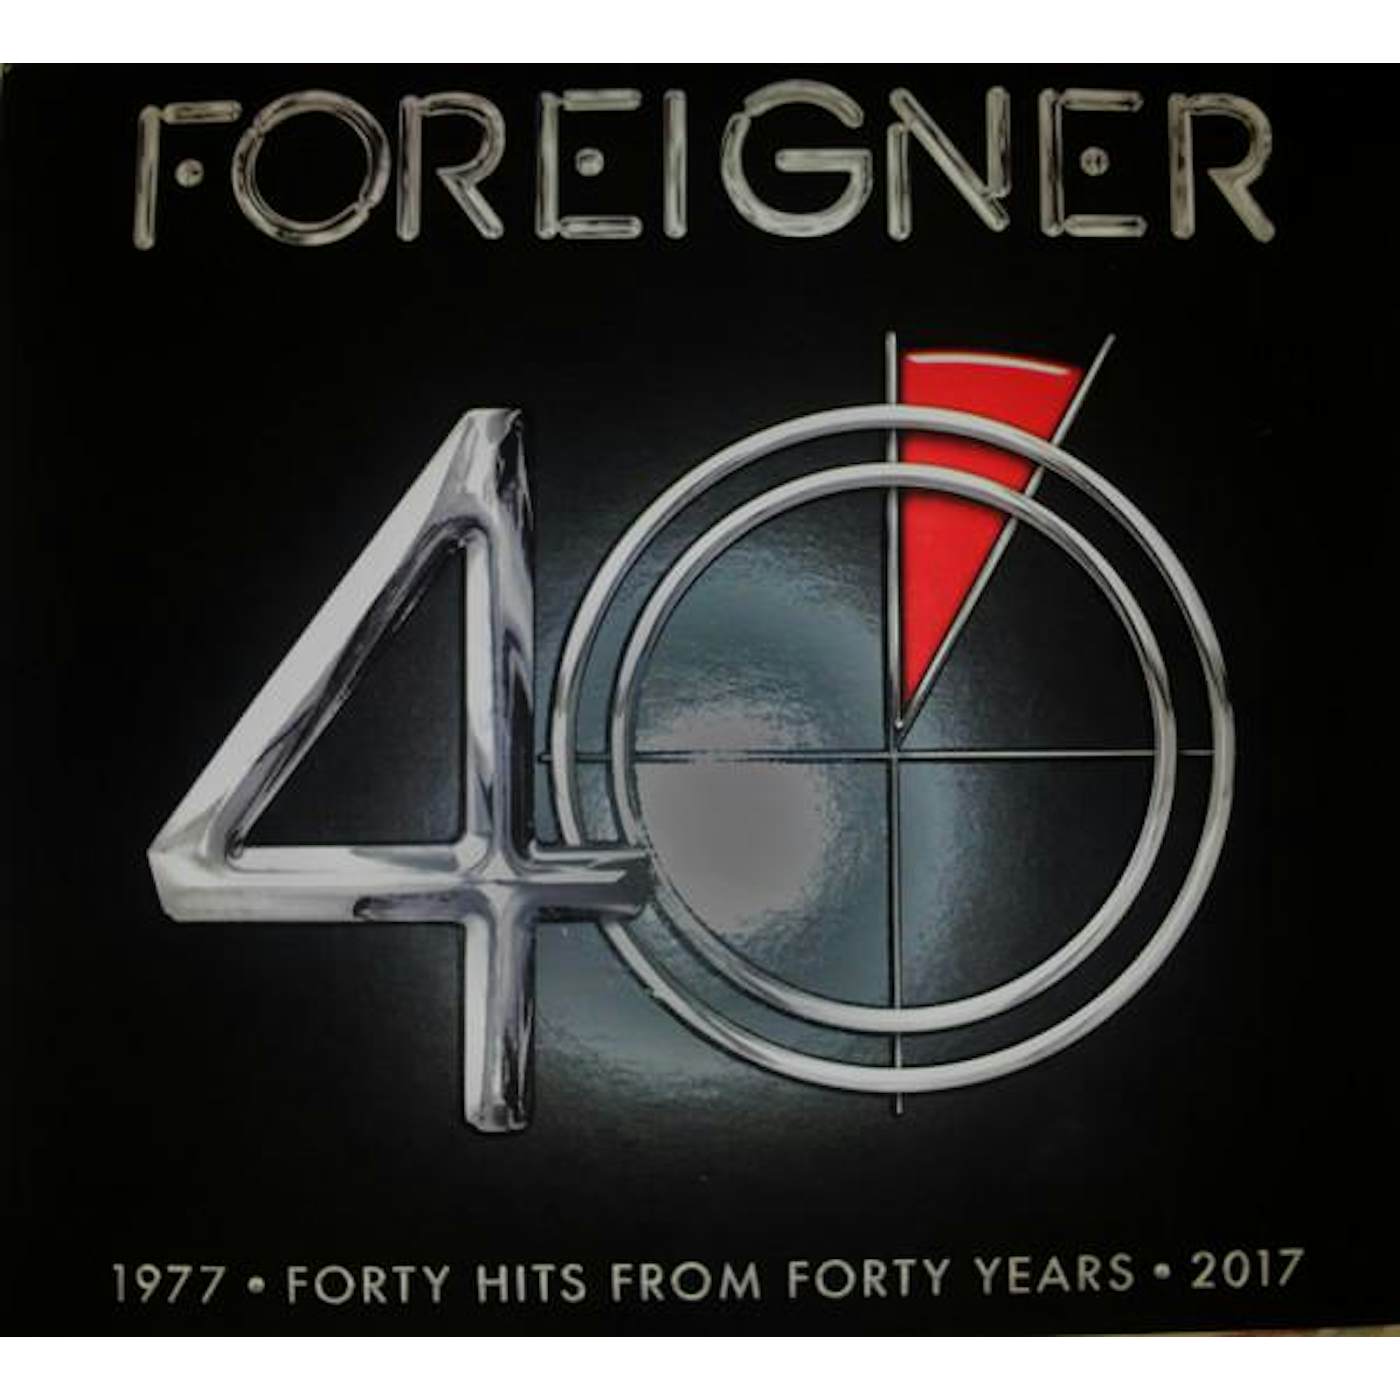 Foreigner 40 CD